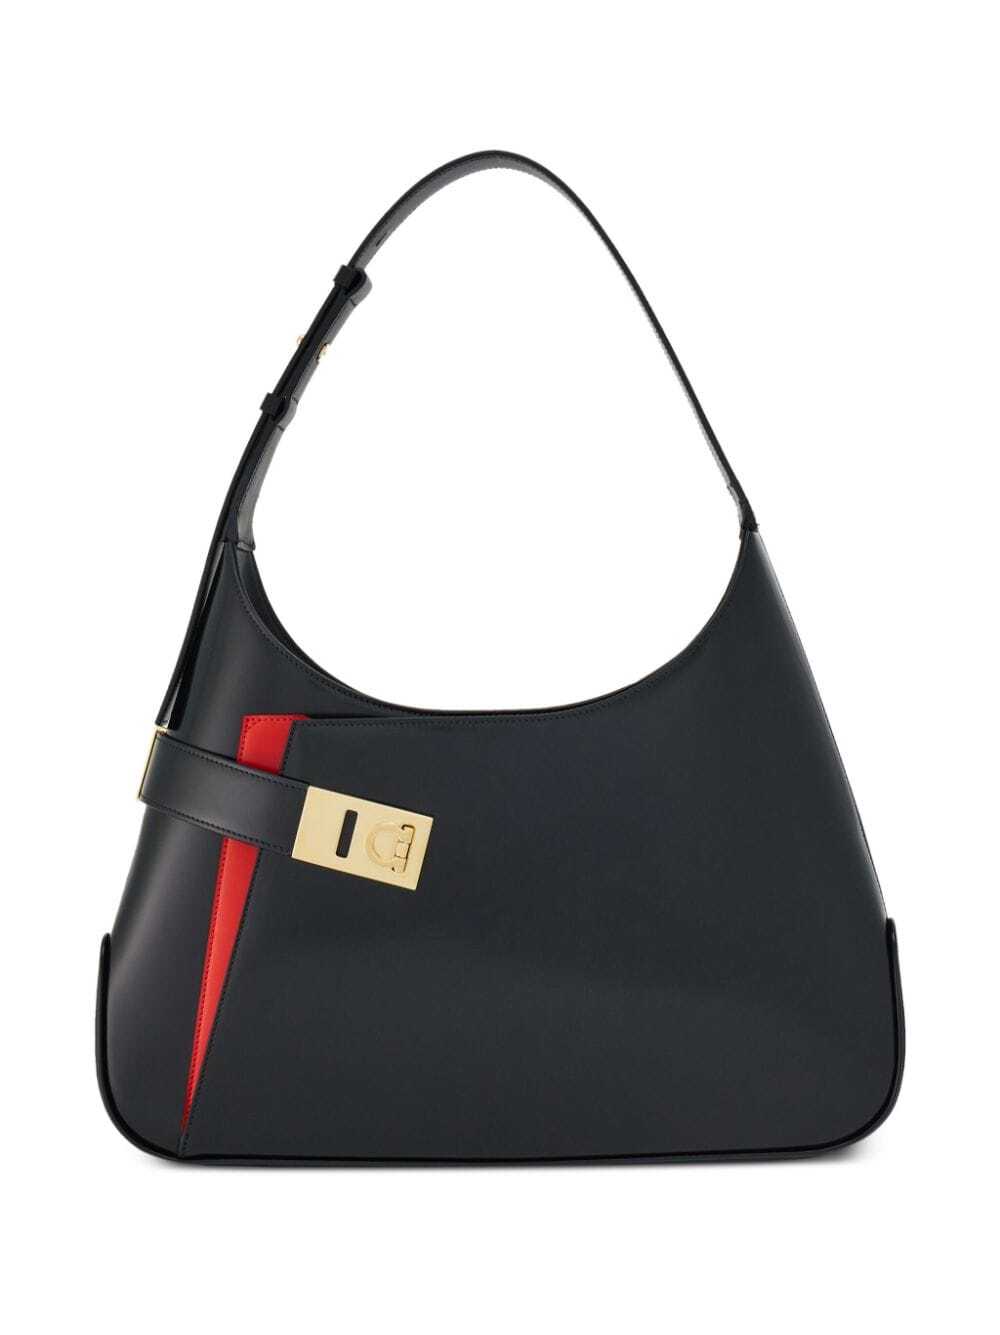 Ferragamo Hobo leather shoulder bag - Black